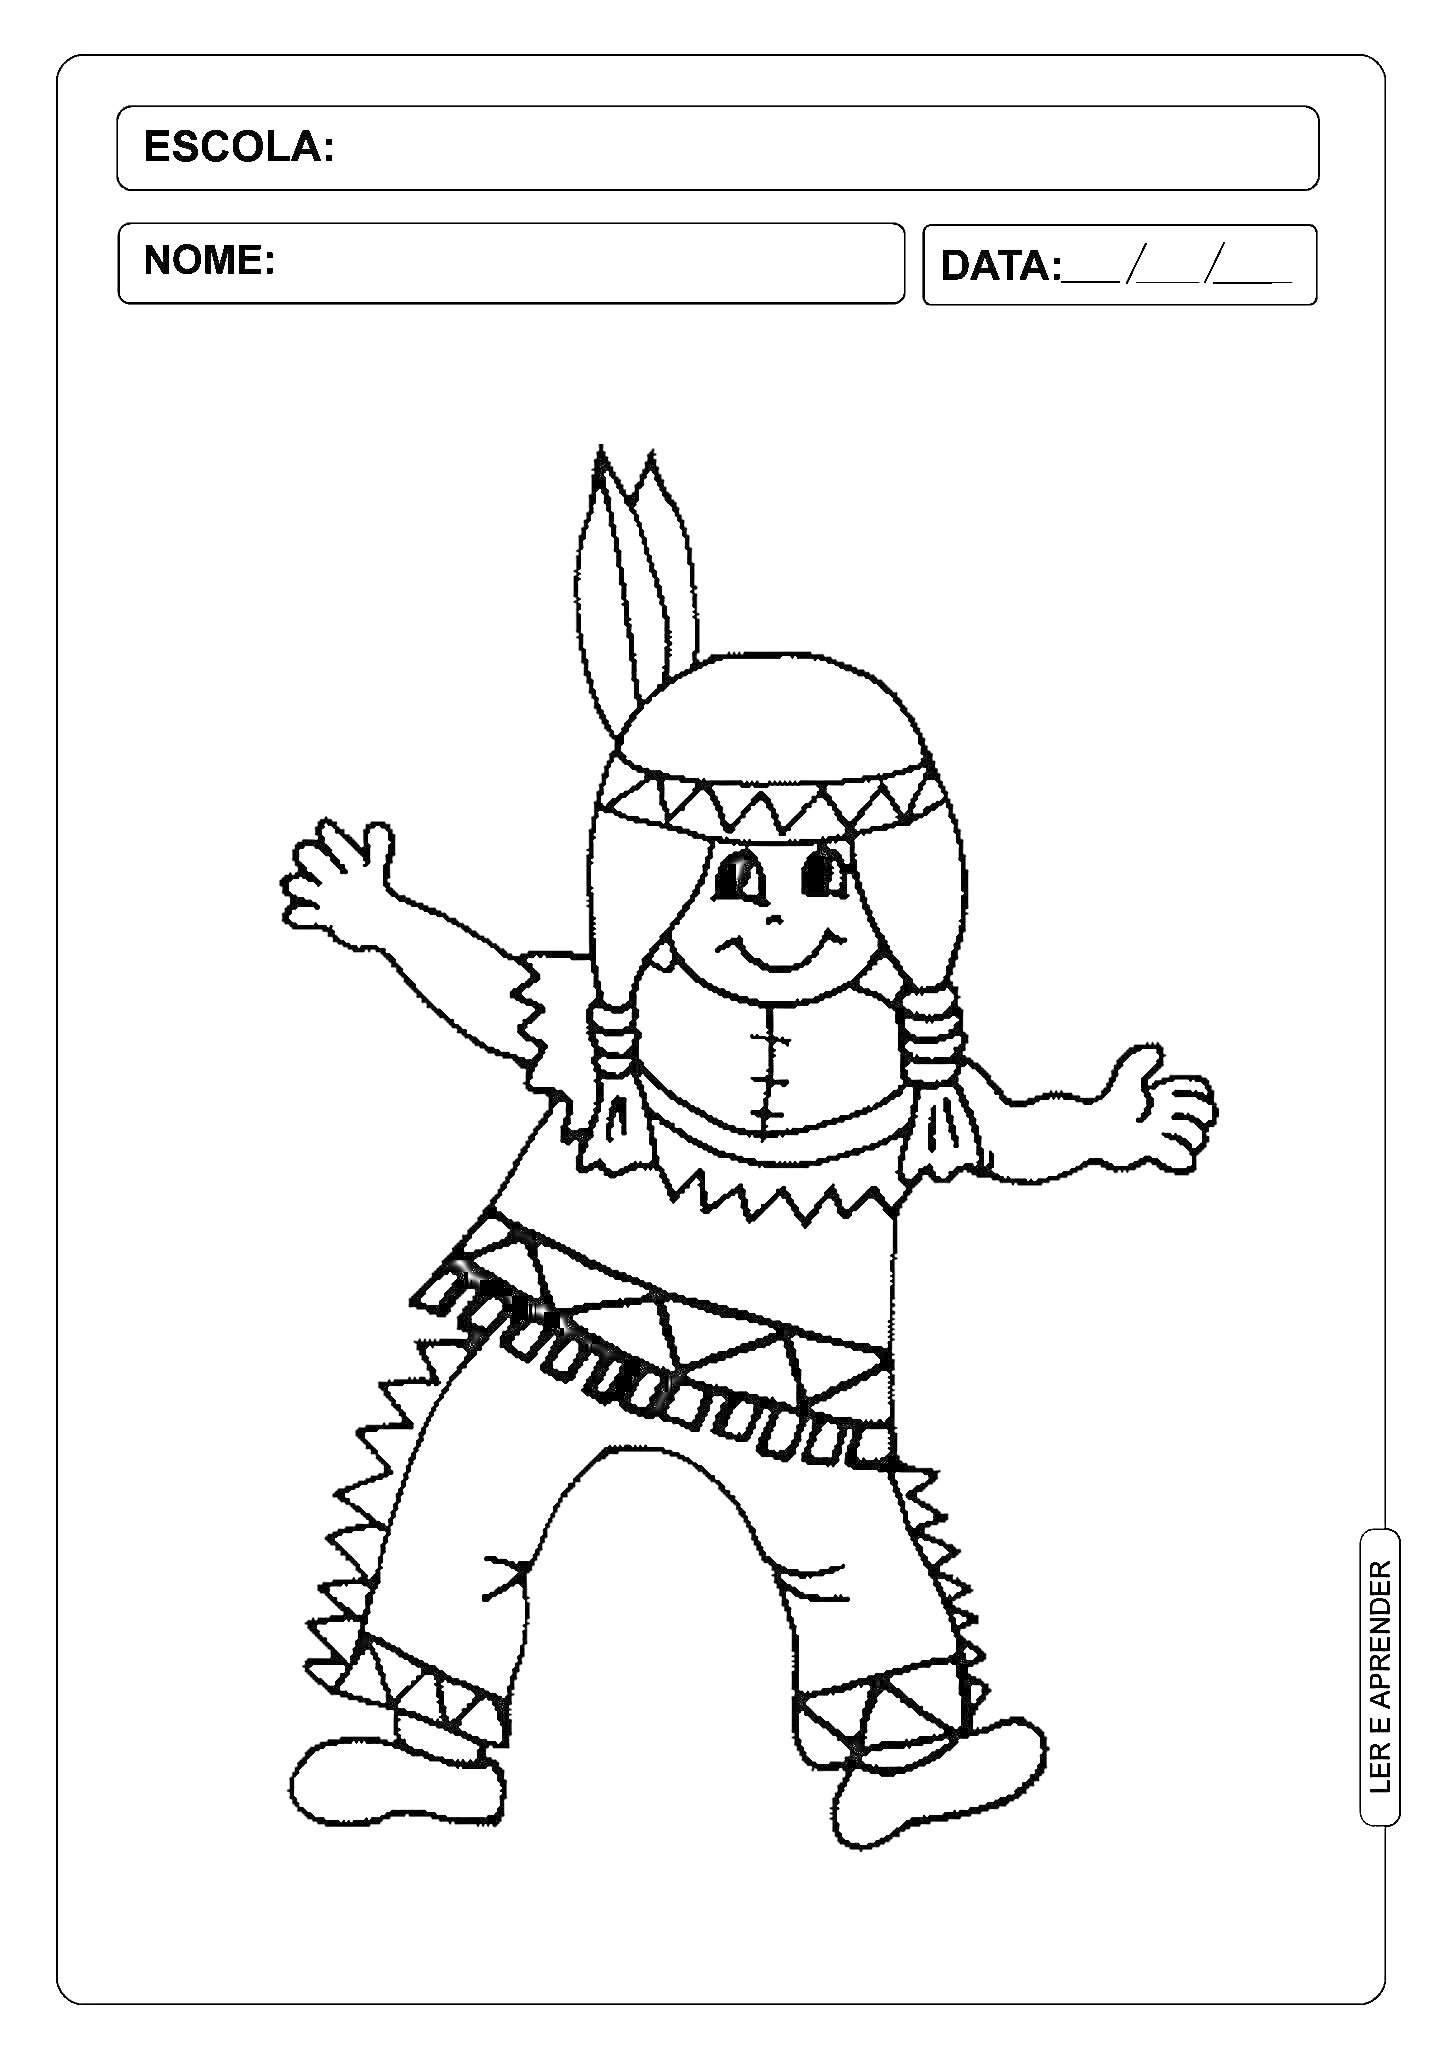 Раскраска Раскраска с изображением индейца в традиционной одежде с перьями на шапке, украшениями на руках и ногах, на фоне пустого поля для заполнения школы, имени и даты